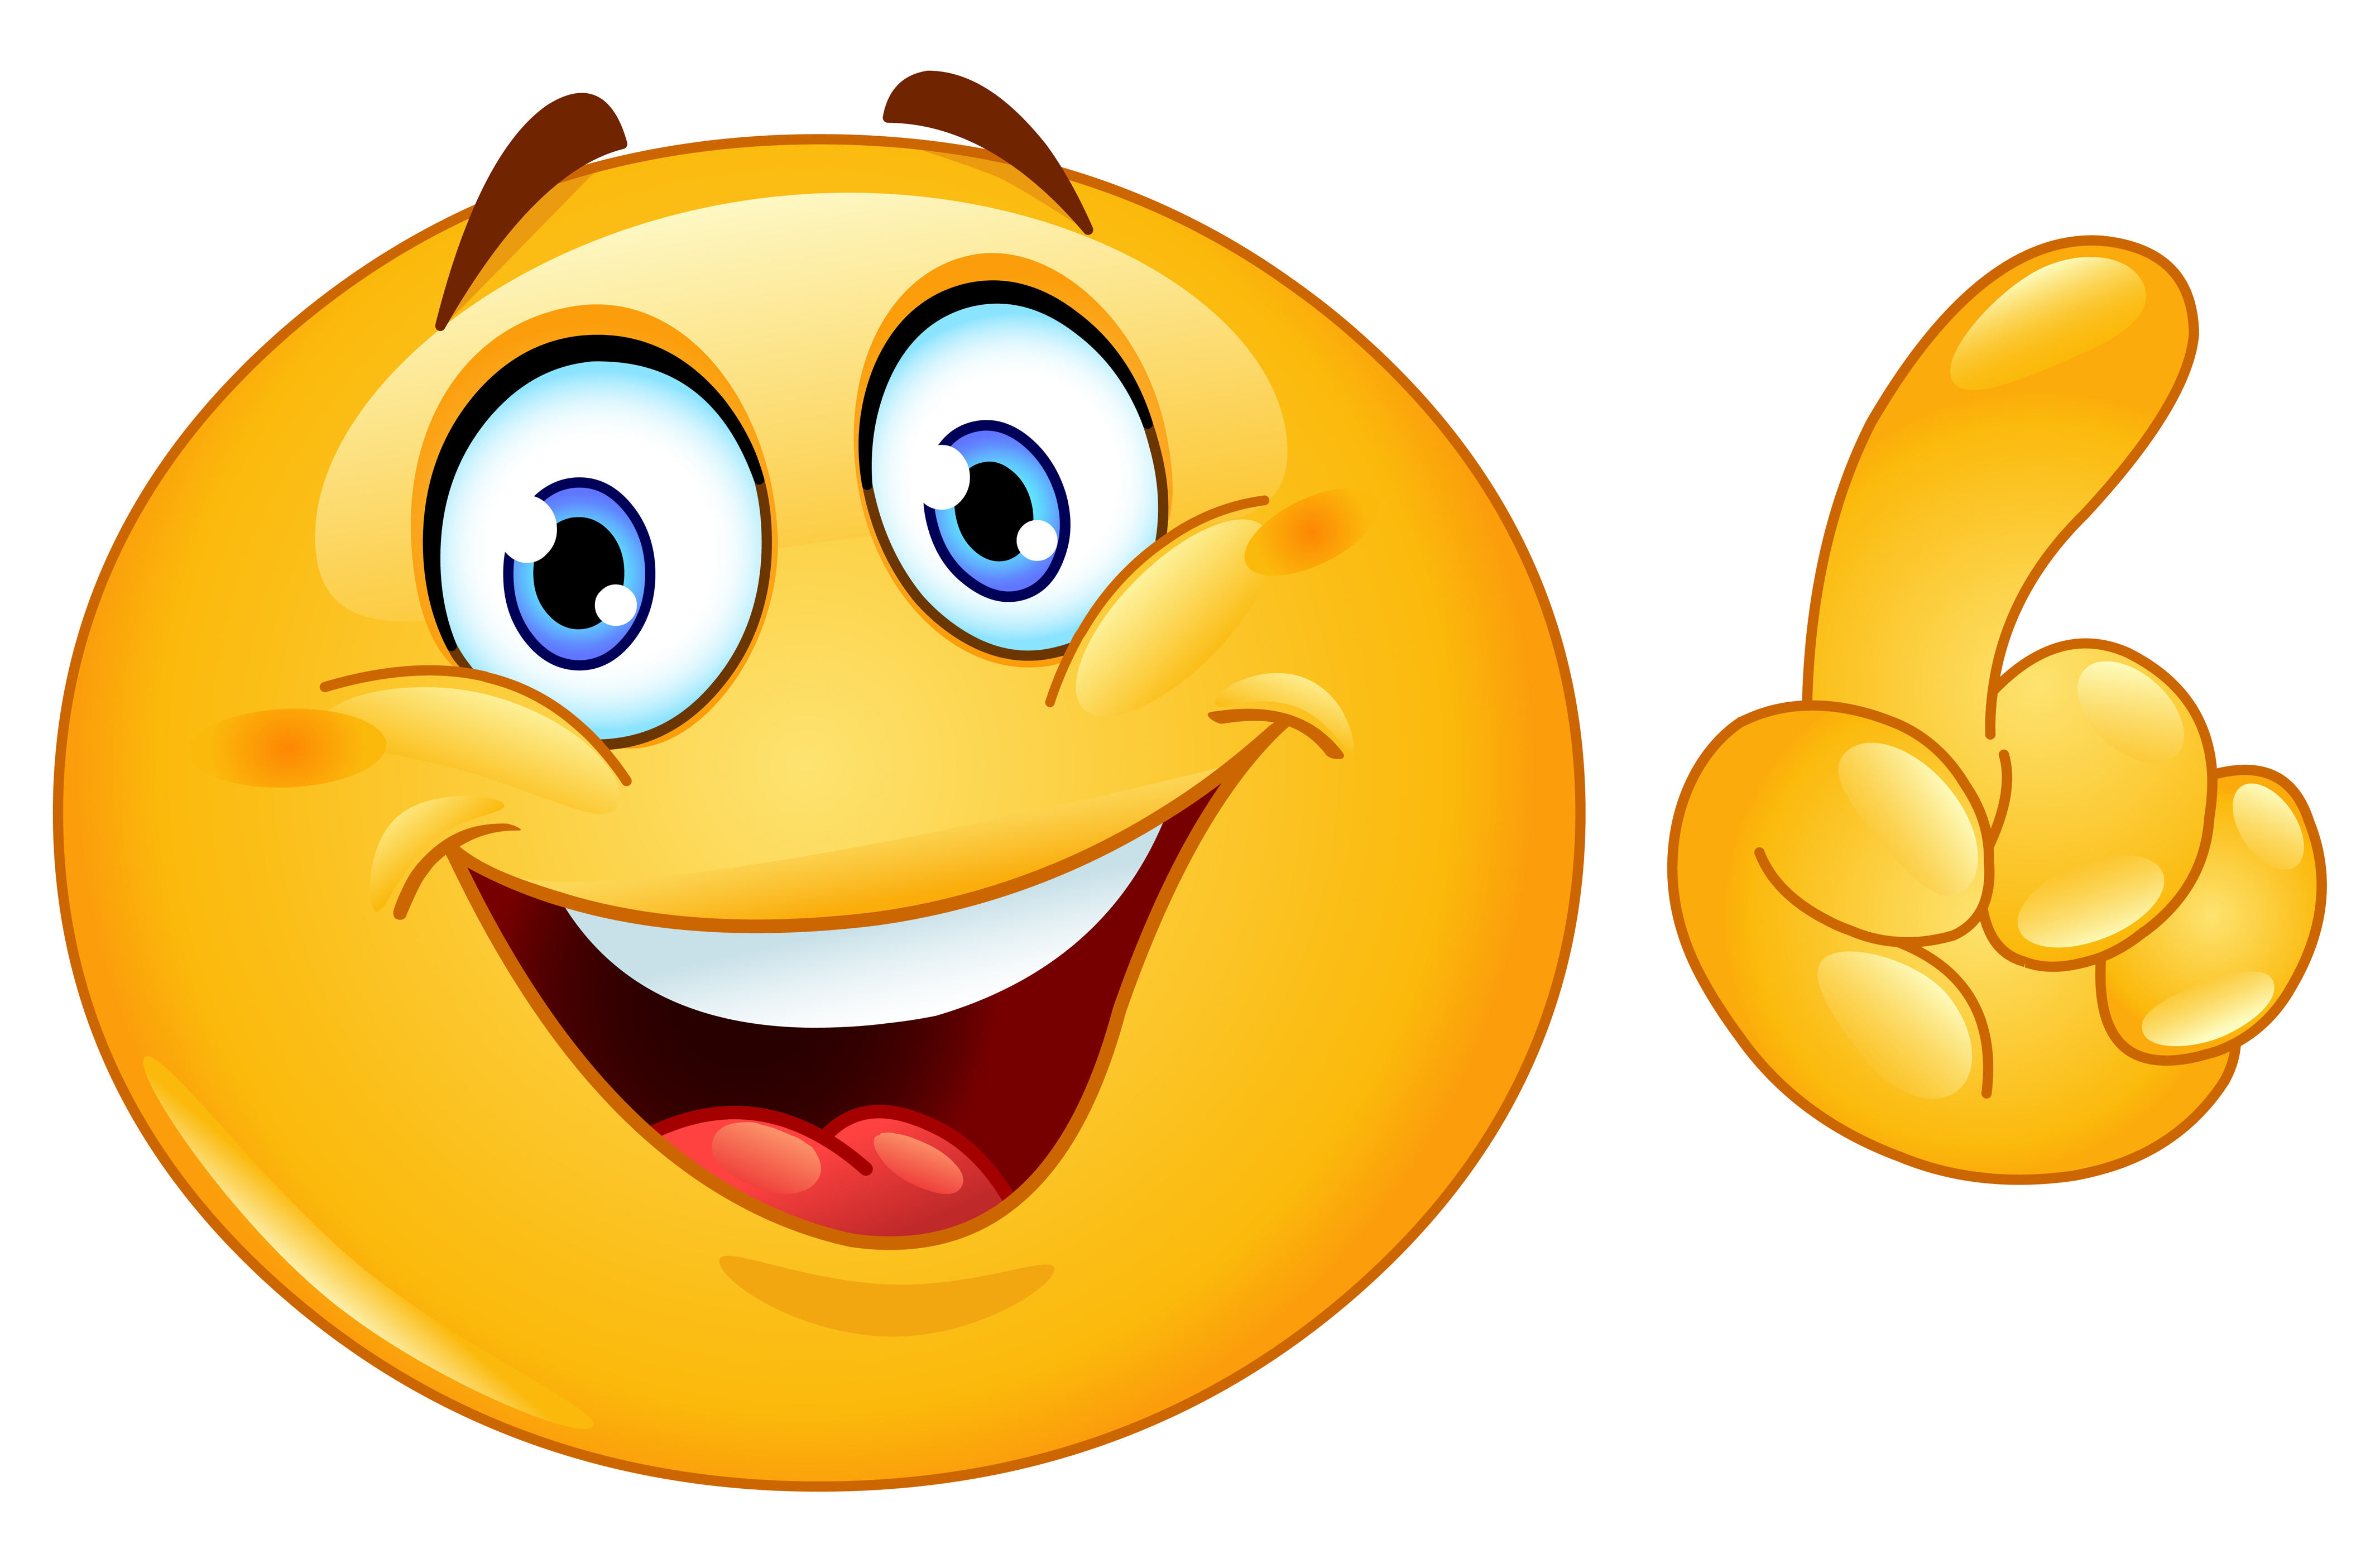 Gambar Emoticon Smile Free Download Clip Art Happy Place Gambar di ...